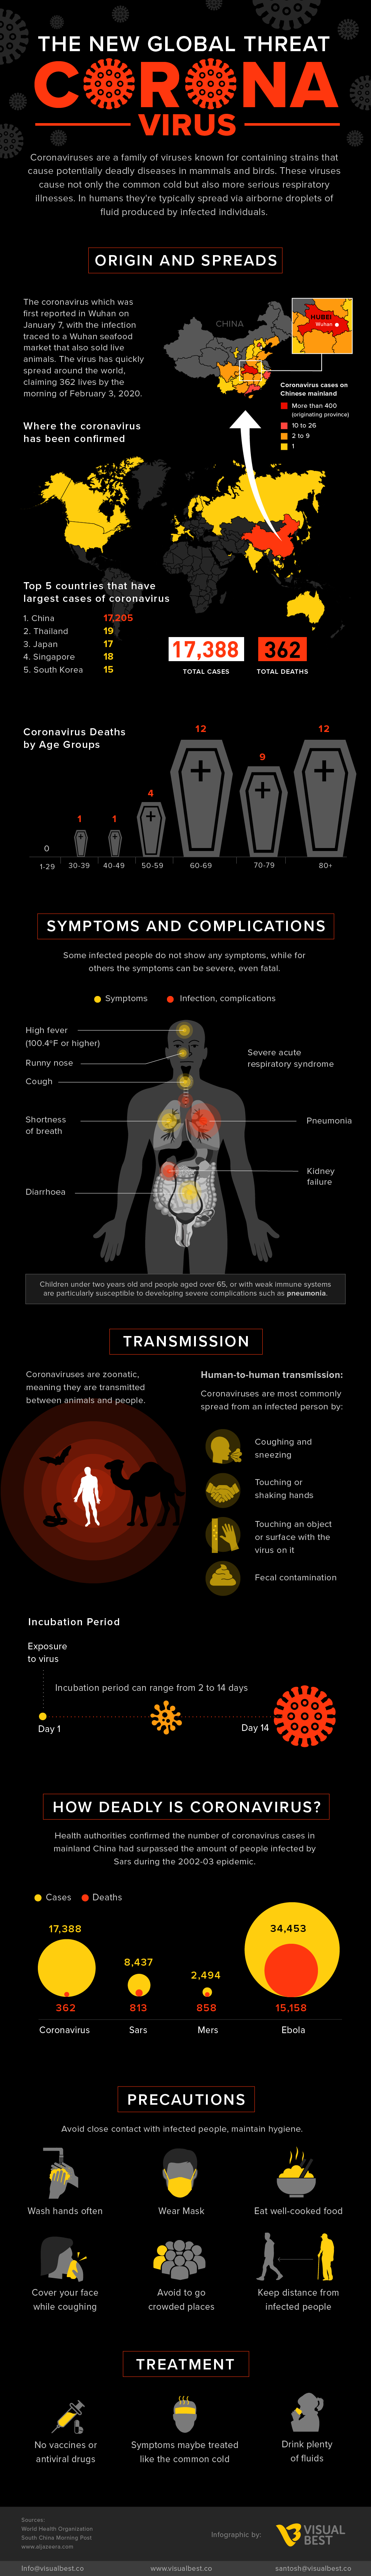 Coronavirus – The New Global Threat #infographic